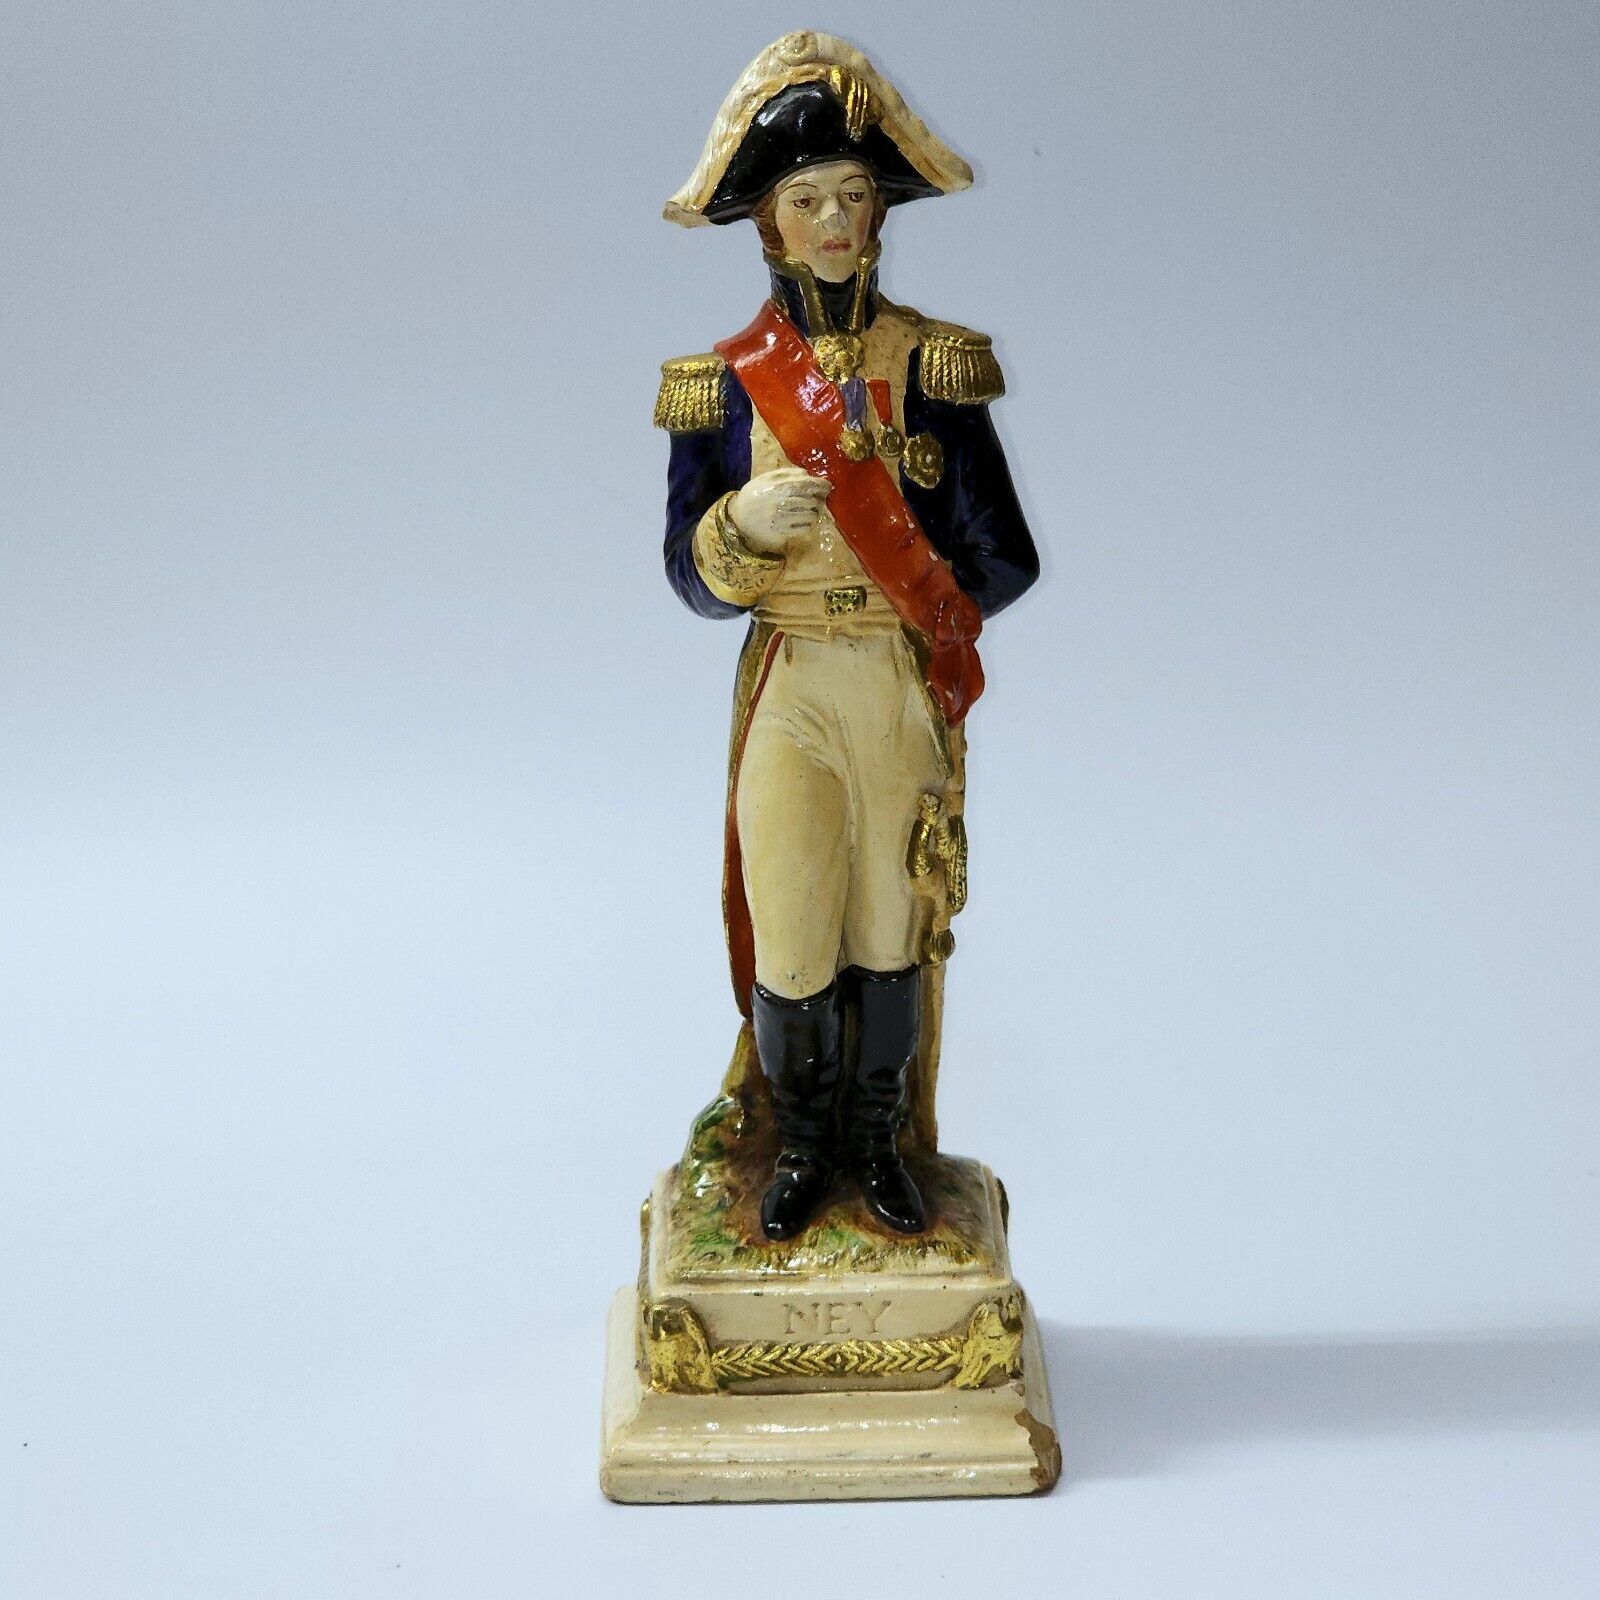 Vintage German Scheibe Alsbach Napoleon GENERAL NEY Statue Figurine - SHIPS FREE